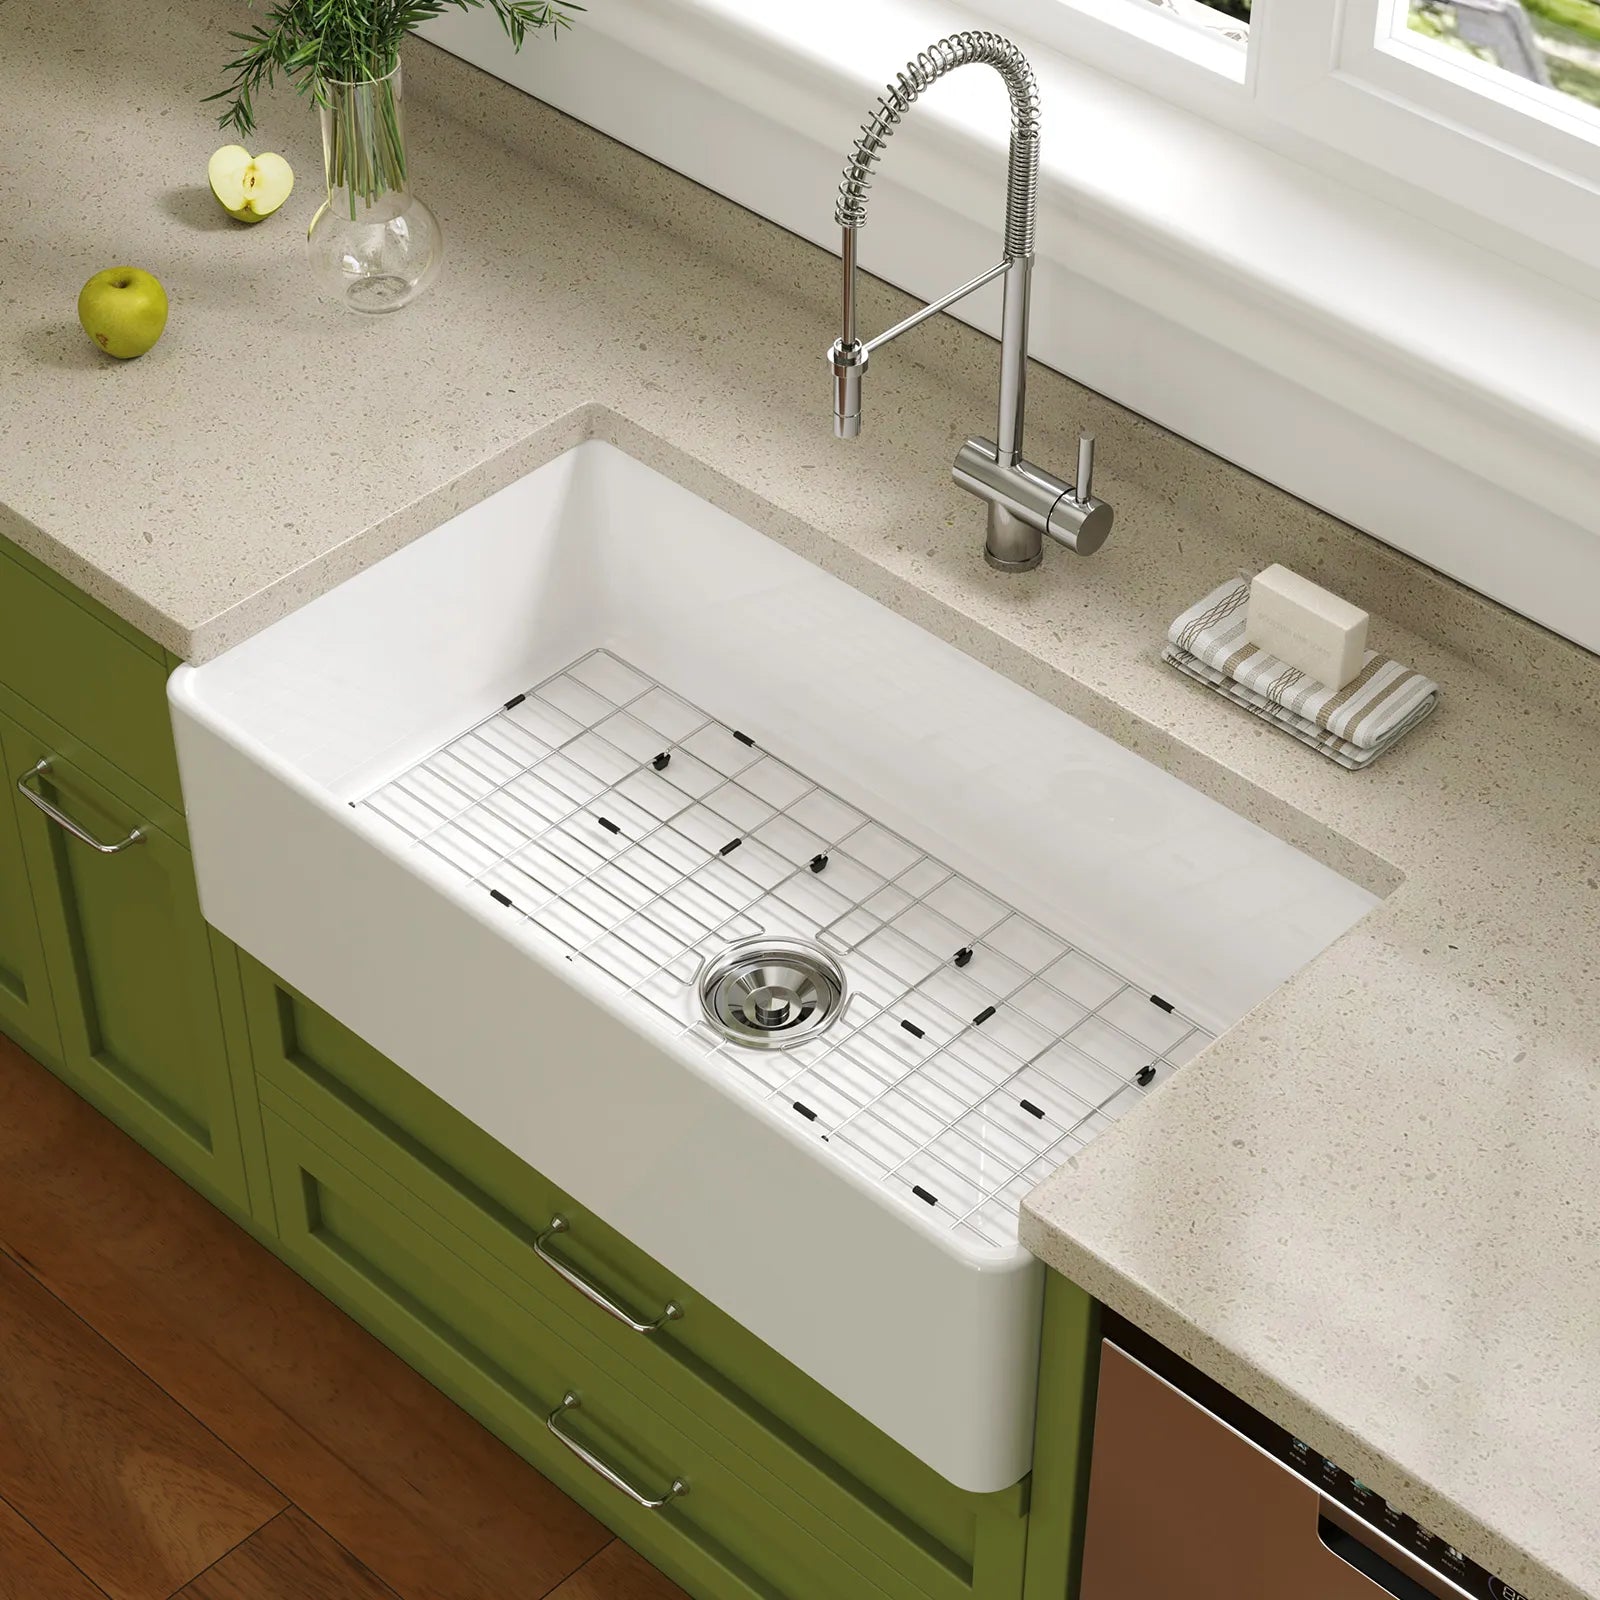 HOROW 36 Inch Kitchen Sink White Undermount Sink Model S3620W